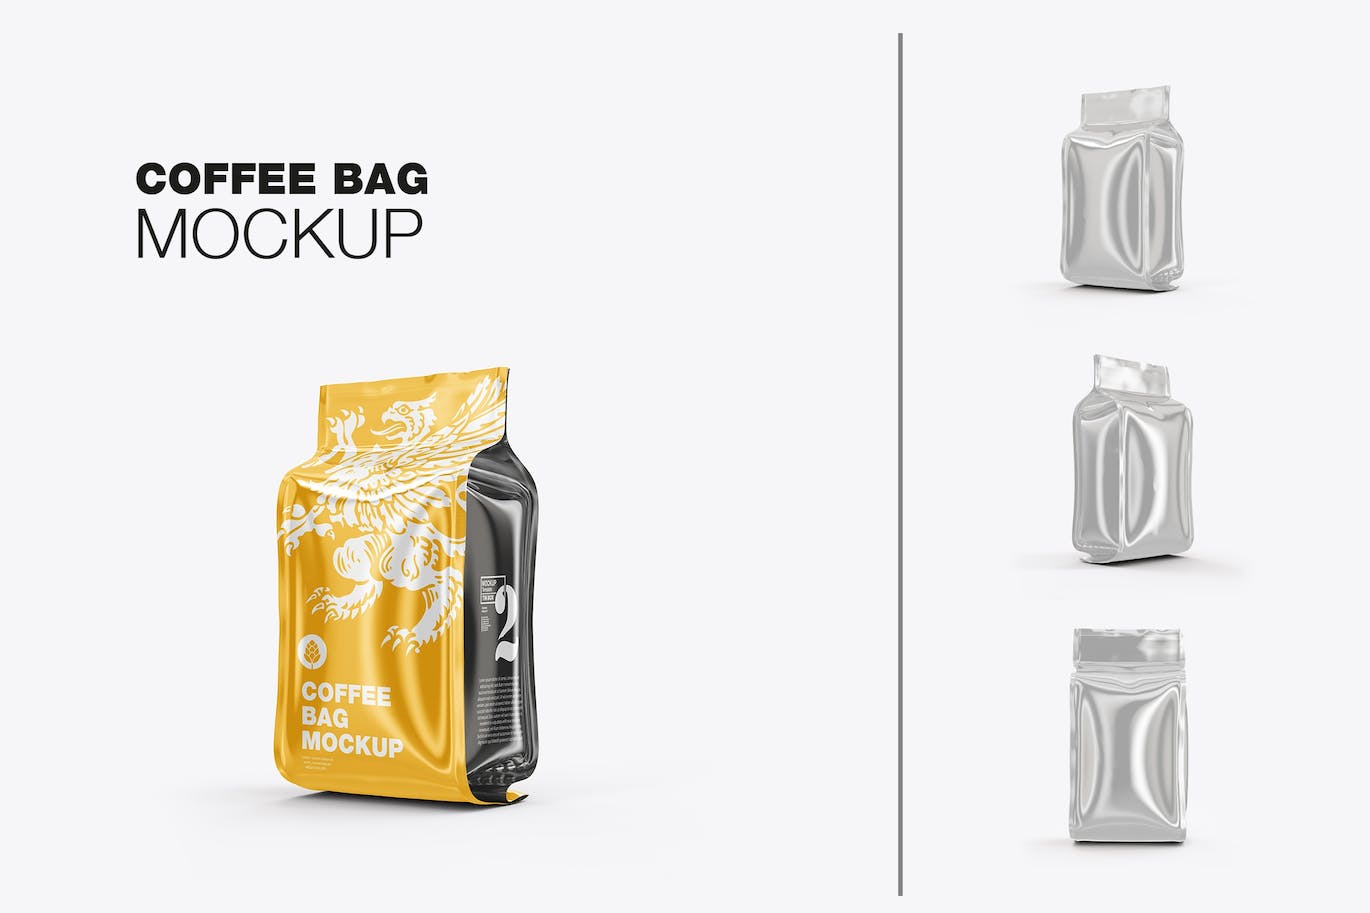 光滑的塑料纸咖啡袋包装设计样机图 Set Glossy Plastic Paper Coffee Bag Mockup 样机素材 第1张